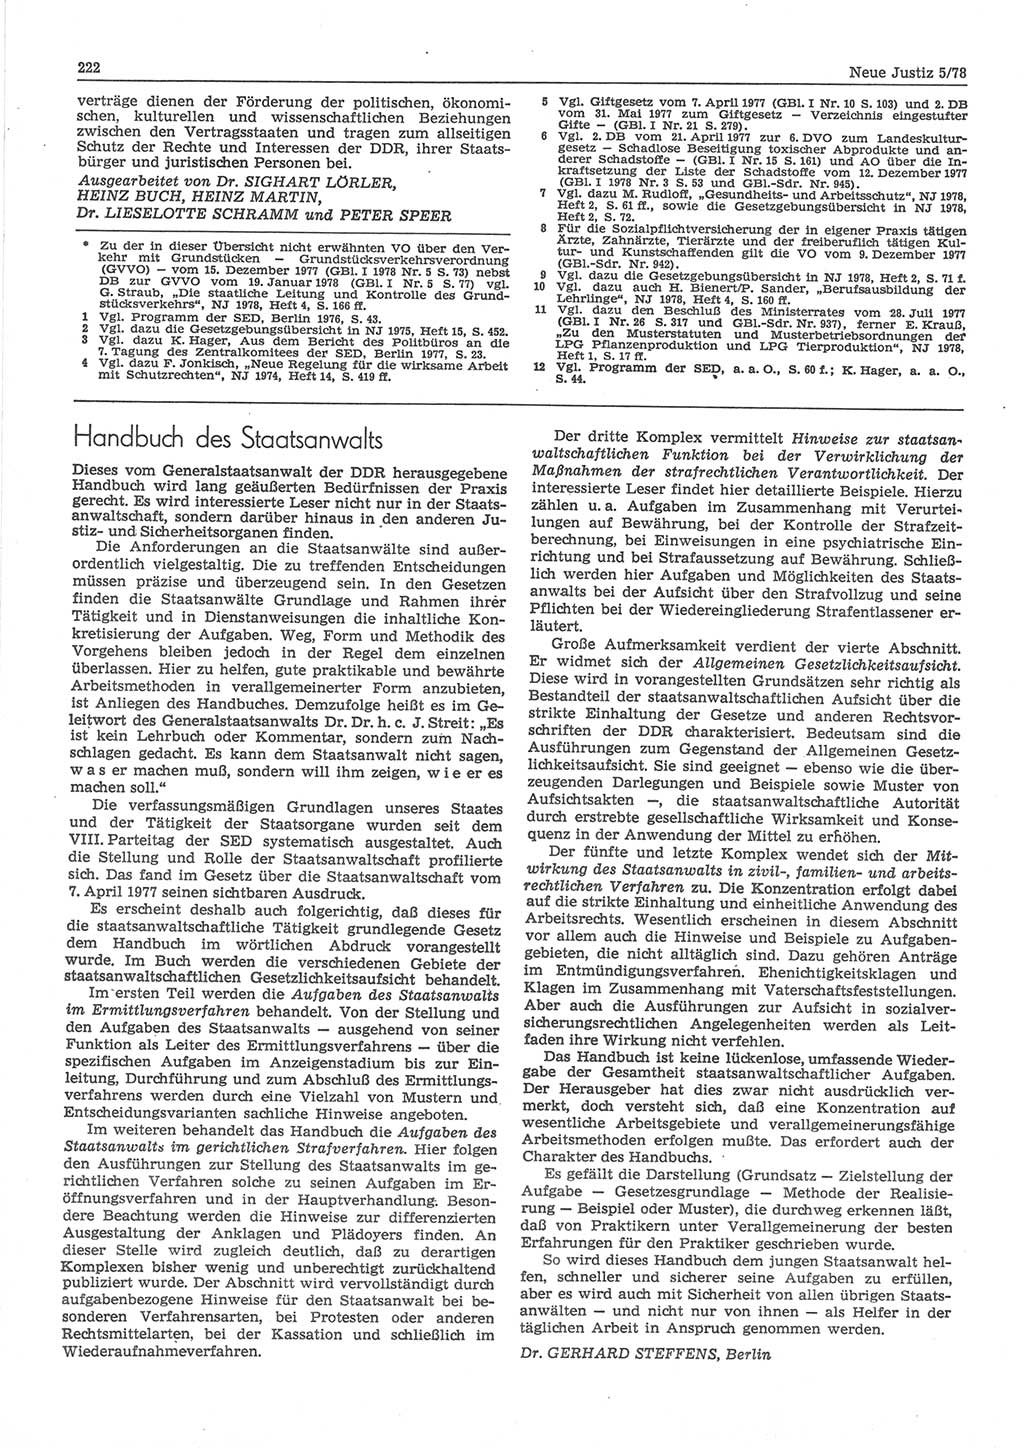 Neue Justiz (NJ), Zeitschrift für sozialistisches Recht und Gesetzlichkeit [Deutsche Demokratische Republik (DDR)], 32. Jahrgang 1978, Seite 222 (NJ DDR 1978, S. 222)